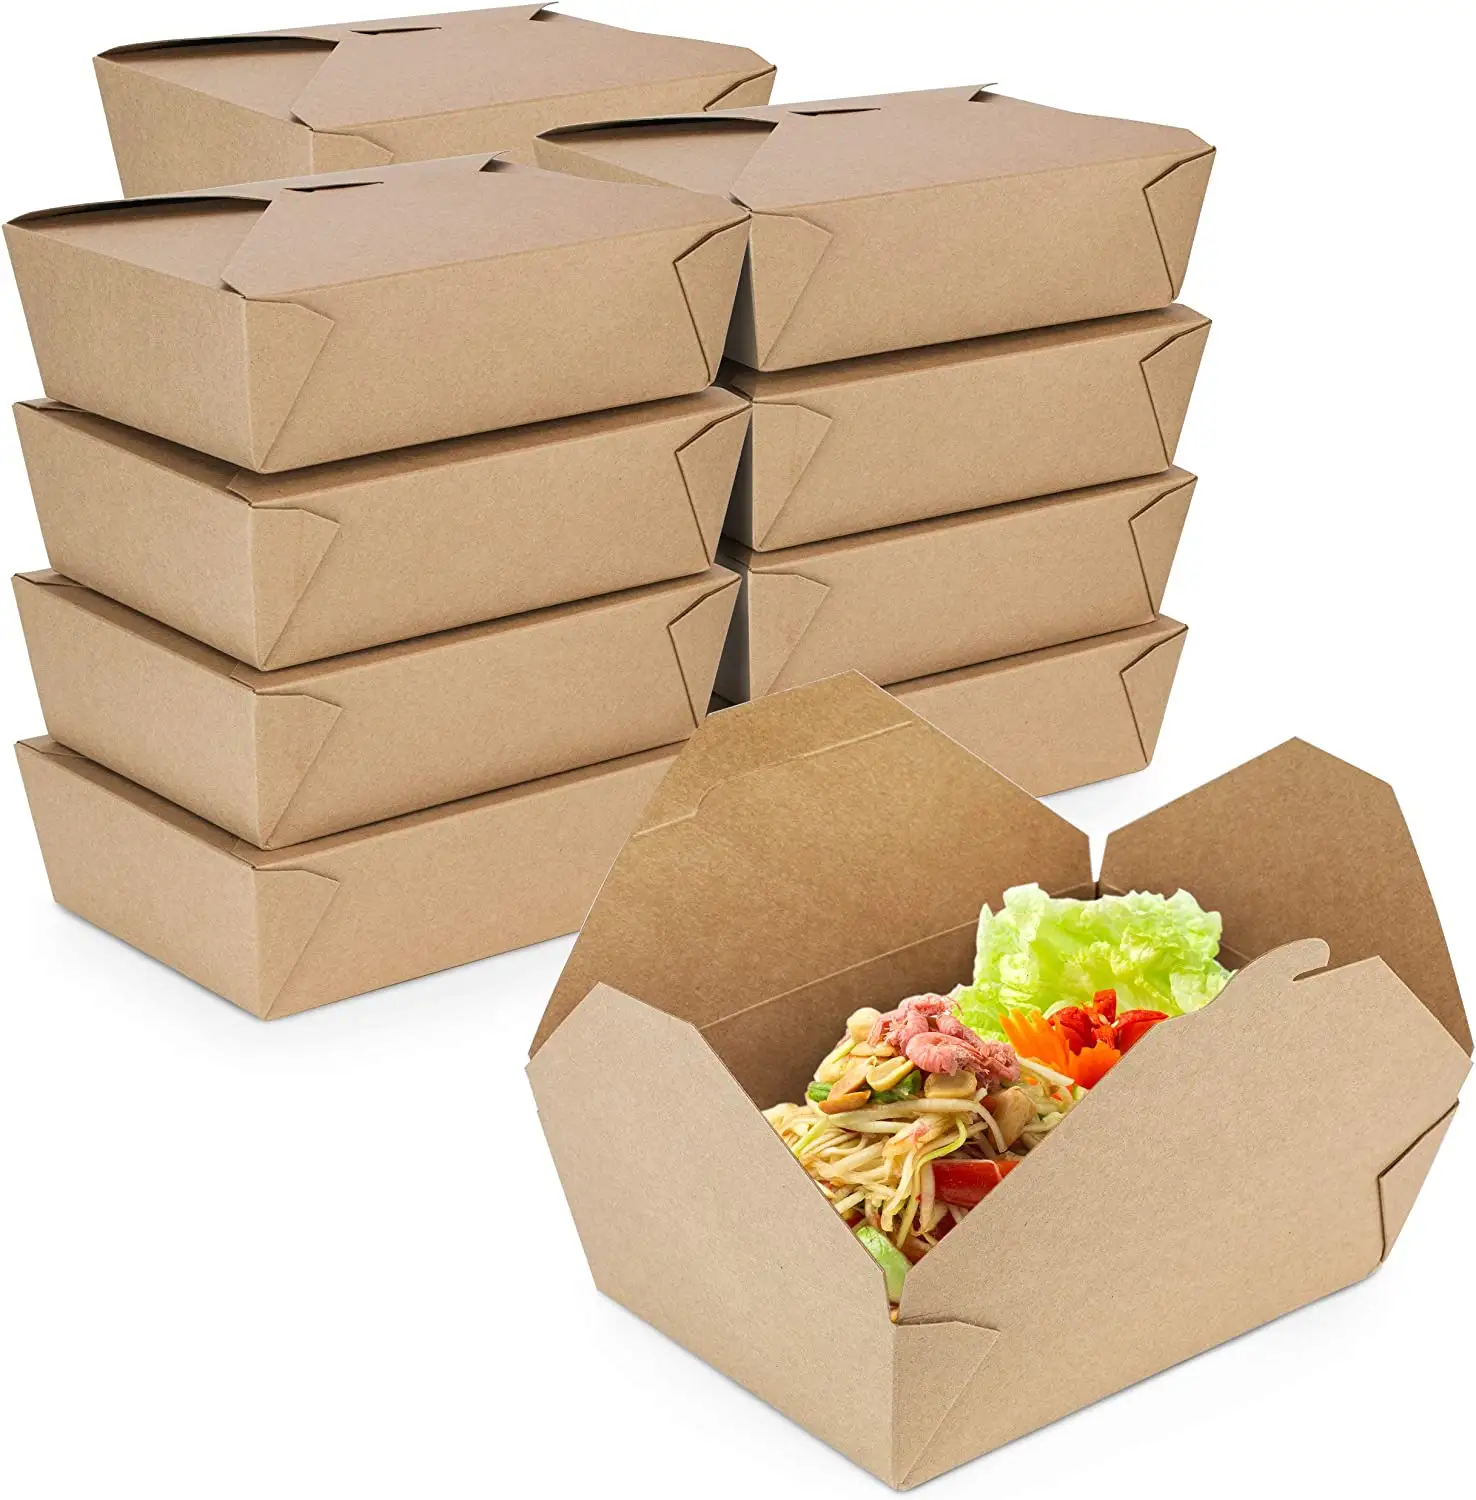 Özel Take Away salata Ramen çorba kasesi dikdörtgen ambalaj kutuları Bento kase öğle yemeği hazır yemek kutusu ambalaj Kraft kağdı